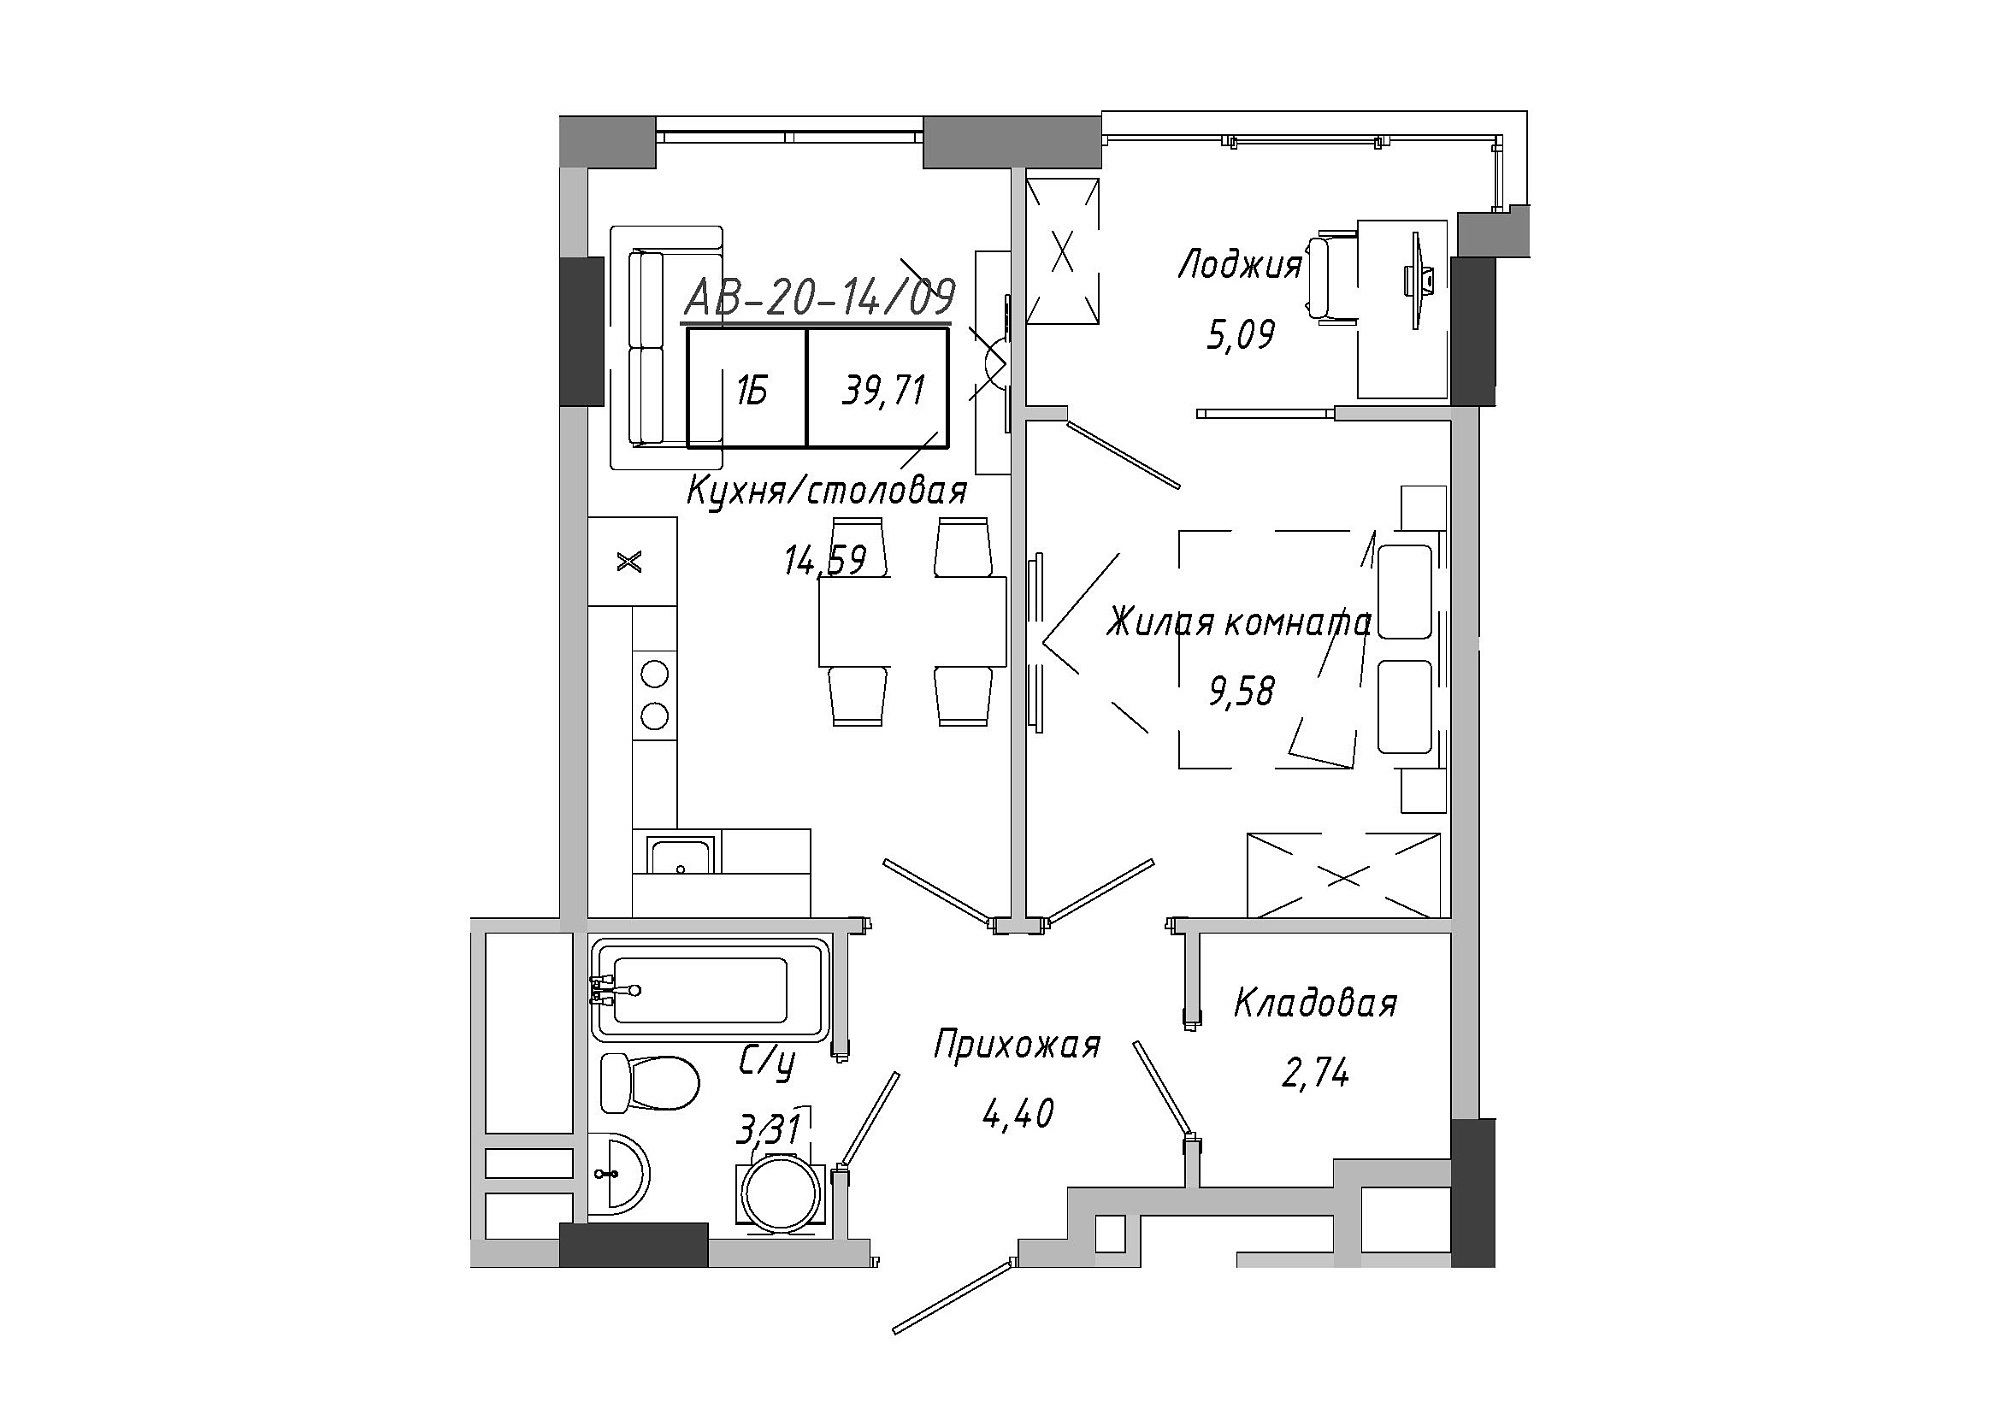 Планировка 1-к квартира площей 39.71м2, AB-20-14/00109.